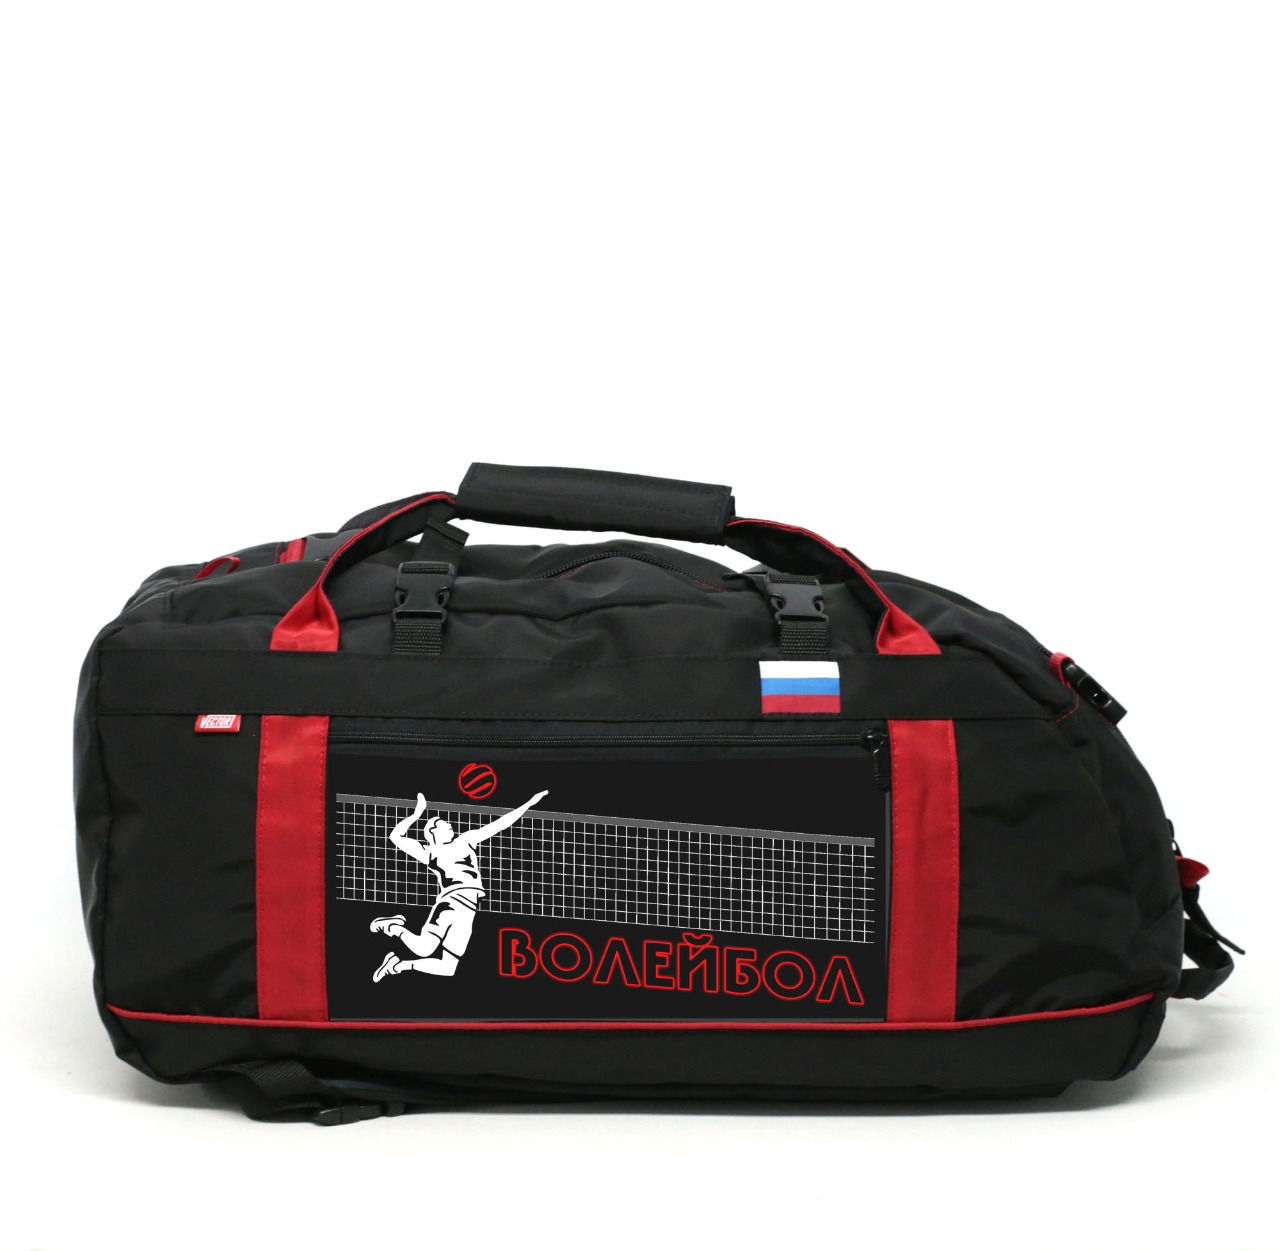 Спортивная сумка Спорт Сибирь Волейбол 35 литров черная